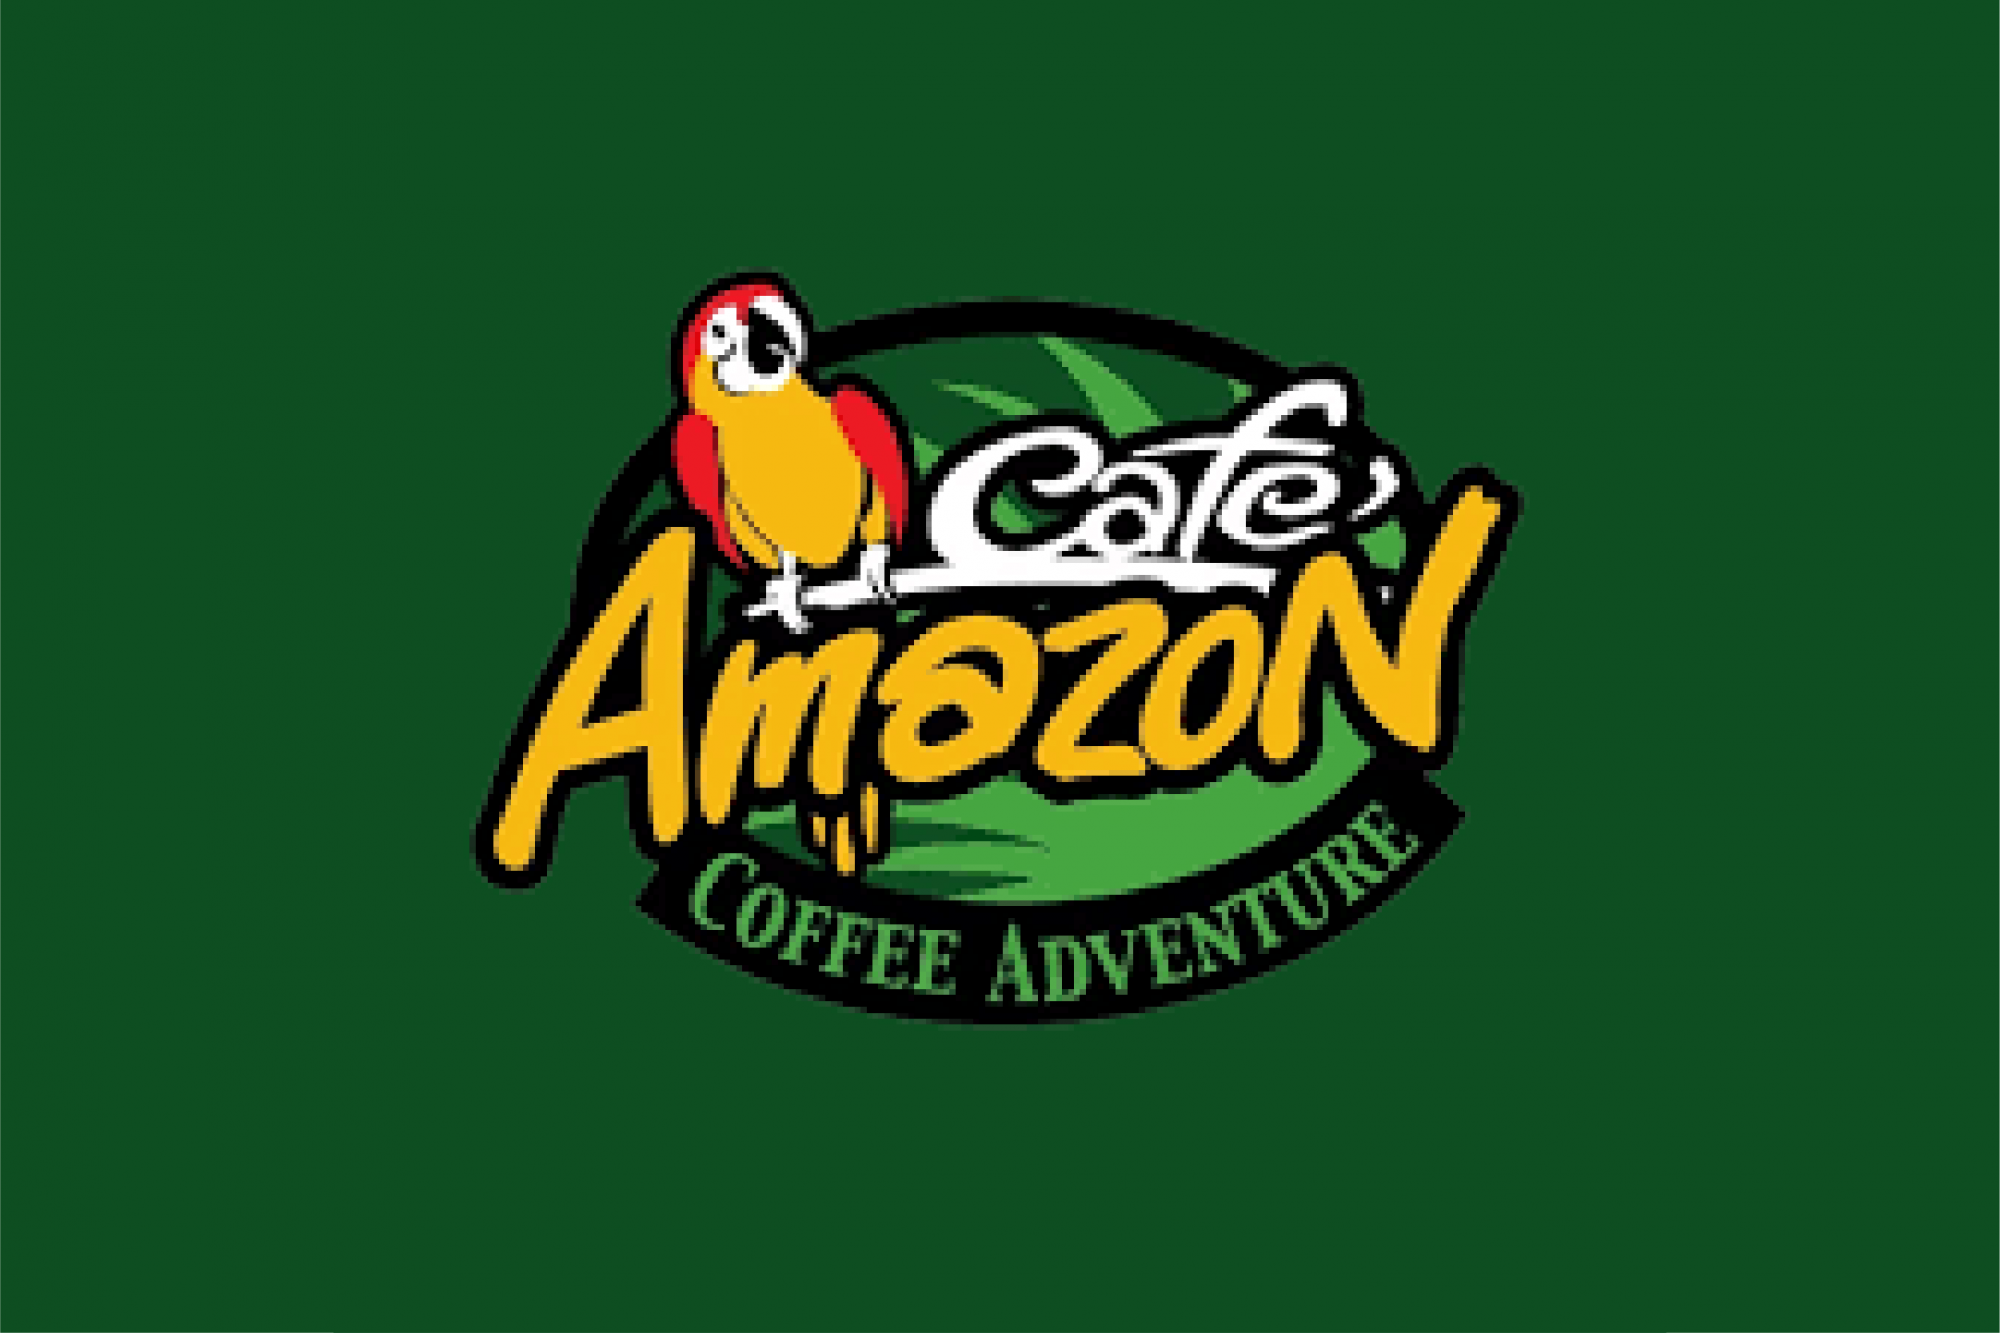 Cafe' Amazon